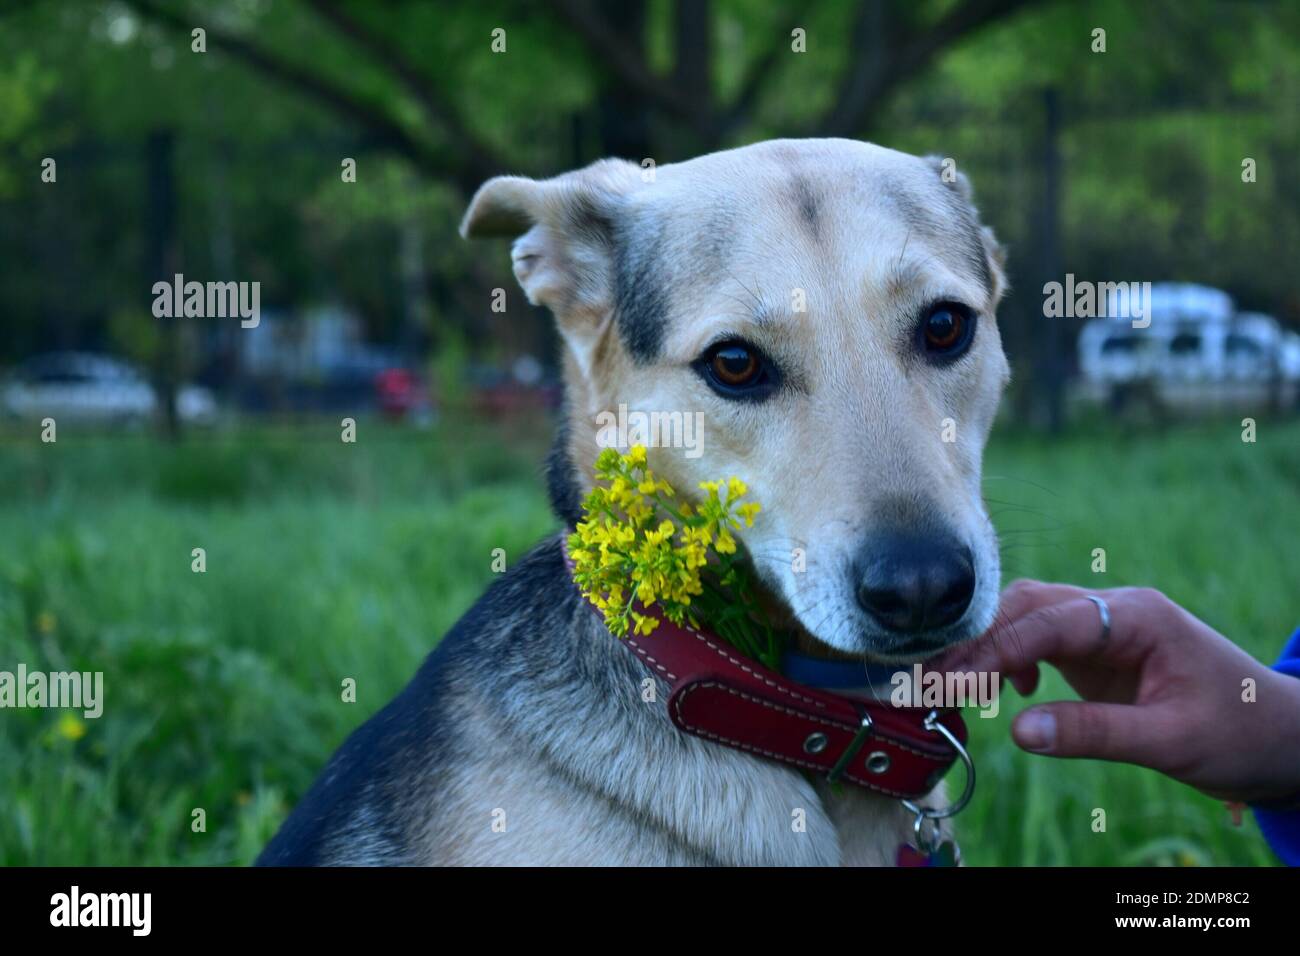 Nahaufnahme von Hand halten Hund gegen Pflanzen Stockfotografie - Alamy